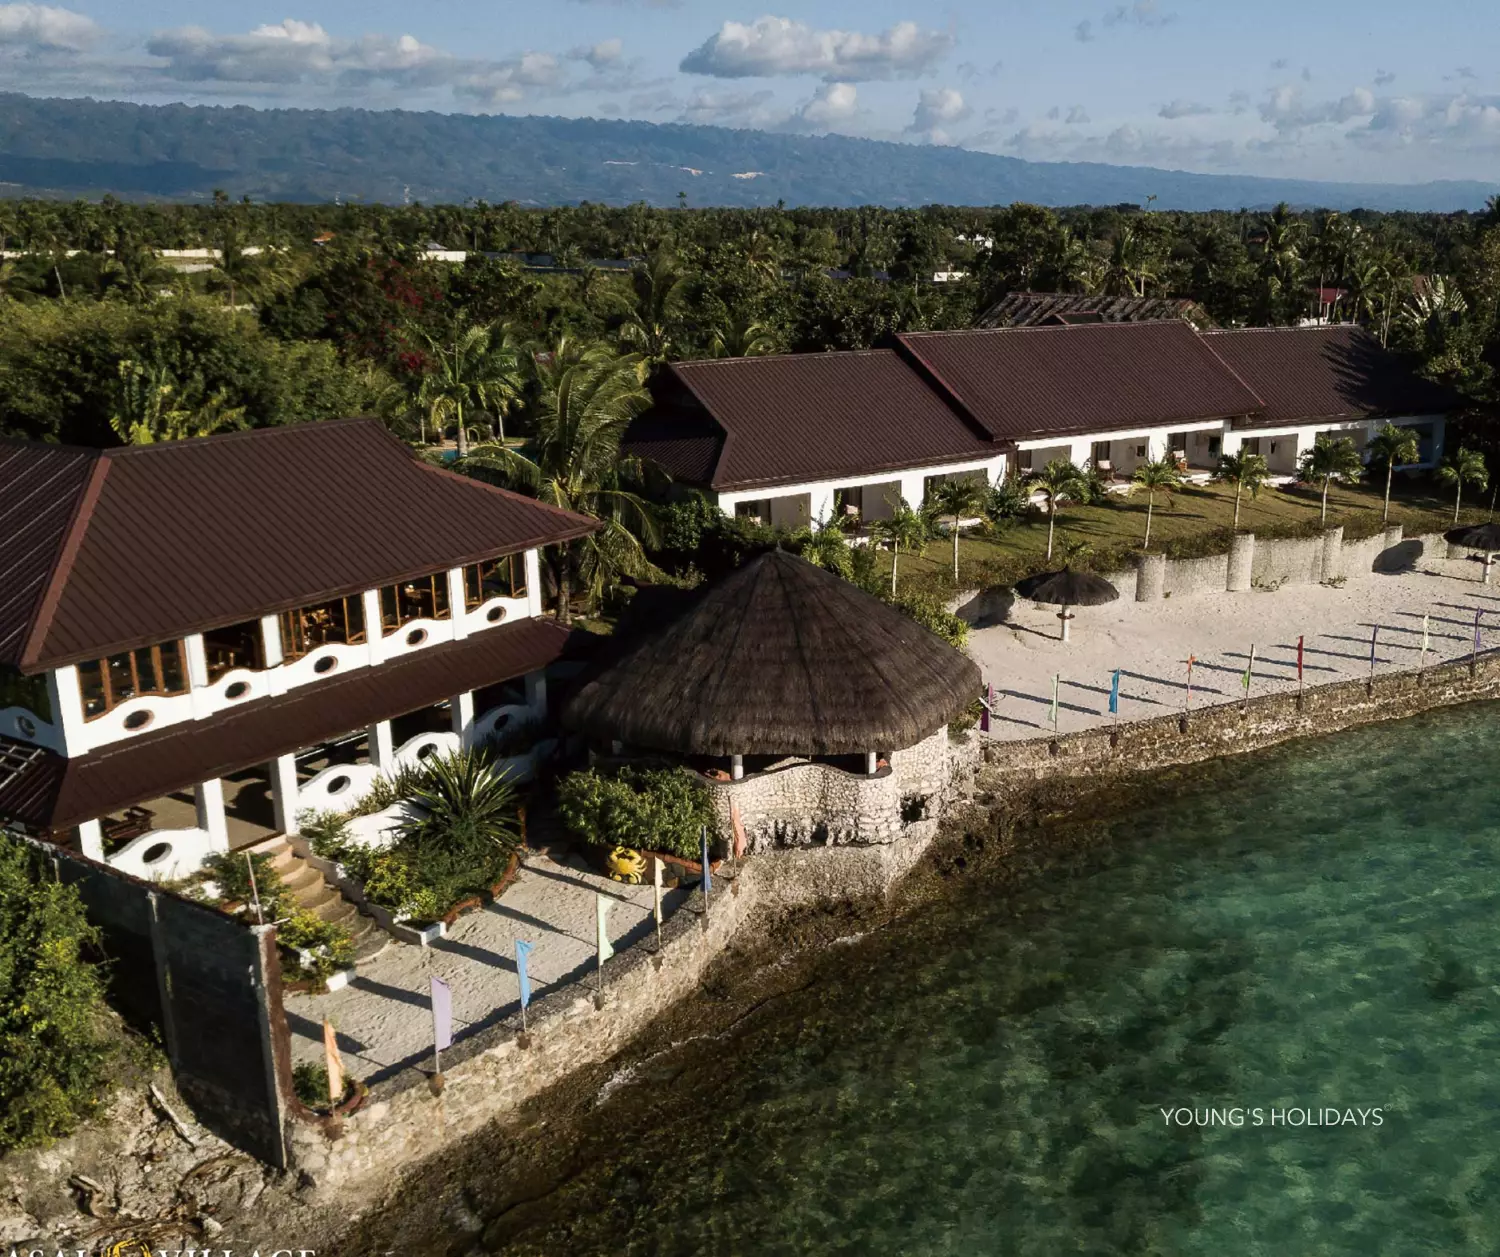 【菲律賓】莫阿博島 Kasai Village Dive Resort 5日4夜潛水自由行套票